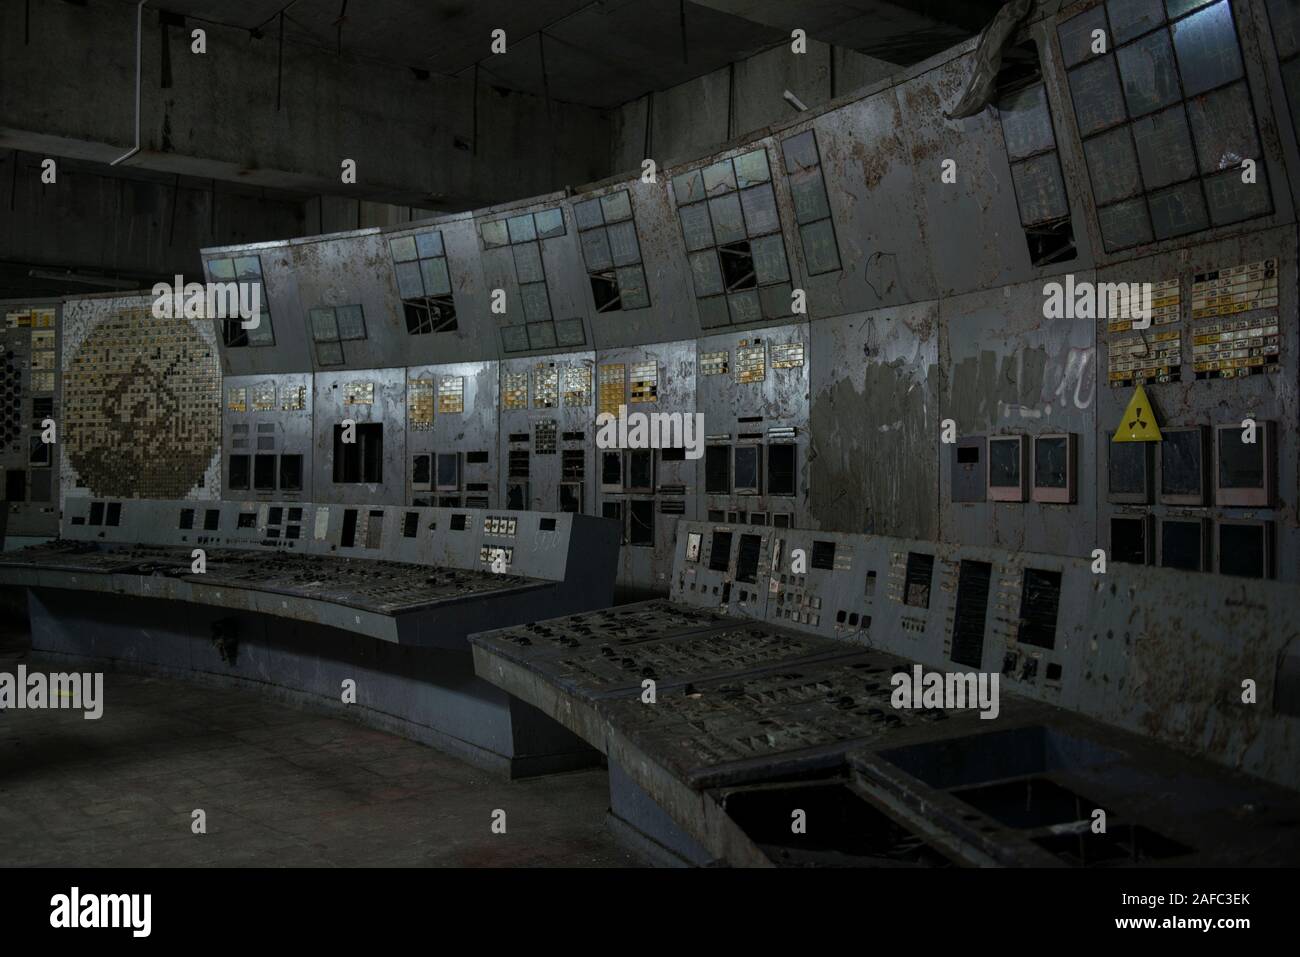 Der Kontrollraum des Reaktors vier von Tschernobyl, der Standort der weltweit Verheerendsten nuklearen Katastrophe. Die Zimmer des ehemaligen Kernkraftwerk ist, wo Ingenieure den Reaktor der Kühlpumpen als Teil eines Safety Test im April 1986, die zu einer Explosion, die mindestens 28 Menschen in der unmittelbaren Nachkriegszeit getötet und die Umgebung verschmutzt Led abgeschaltet. Die Zimmer, unter einem 36.000-Tonnen Stahl Auffangwannen Bogen gelegen, hat seinen ursprünglichen Displays und Panels der Schaltflächen. Tschernobyl, Ivankiv Rajon, Oblast Kiew, Ukraine, Europa Stockfoto